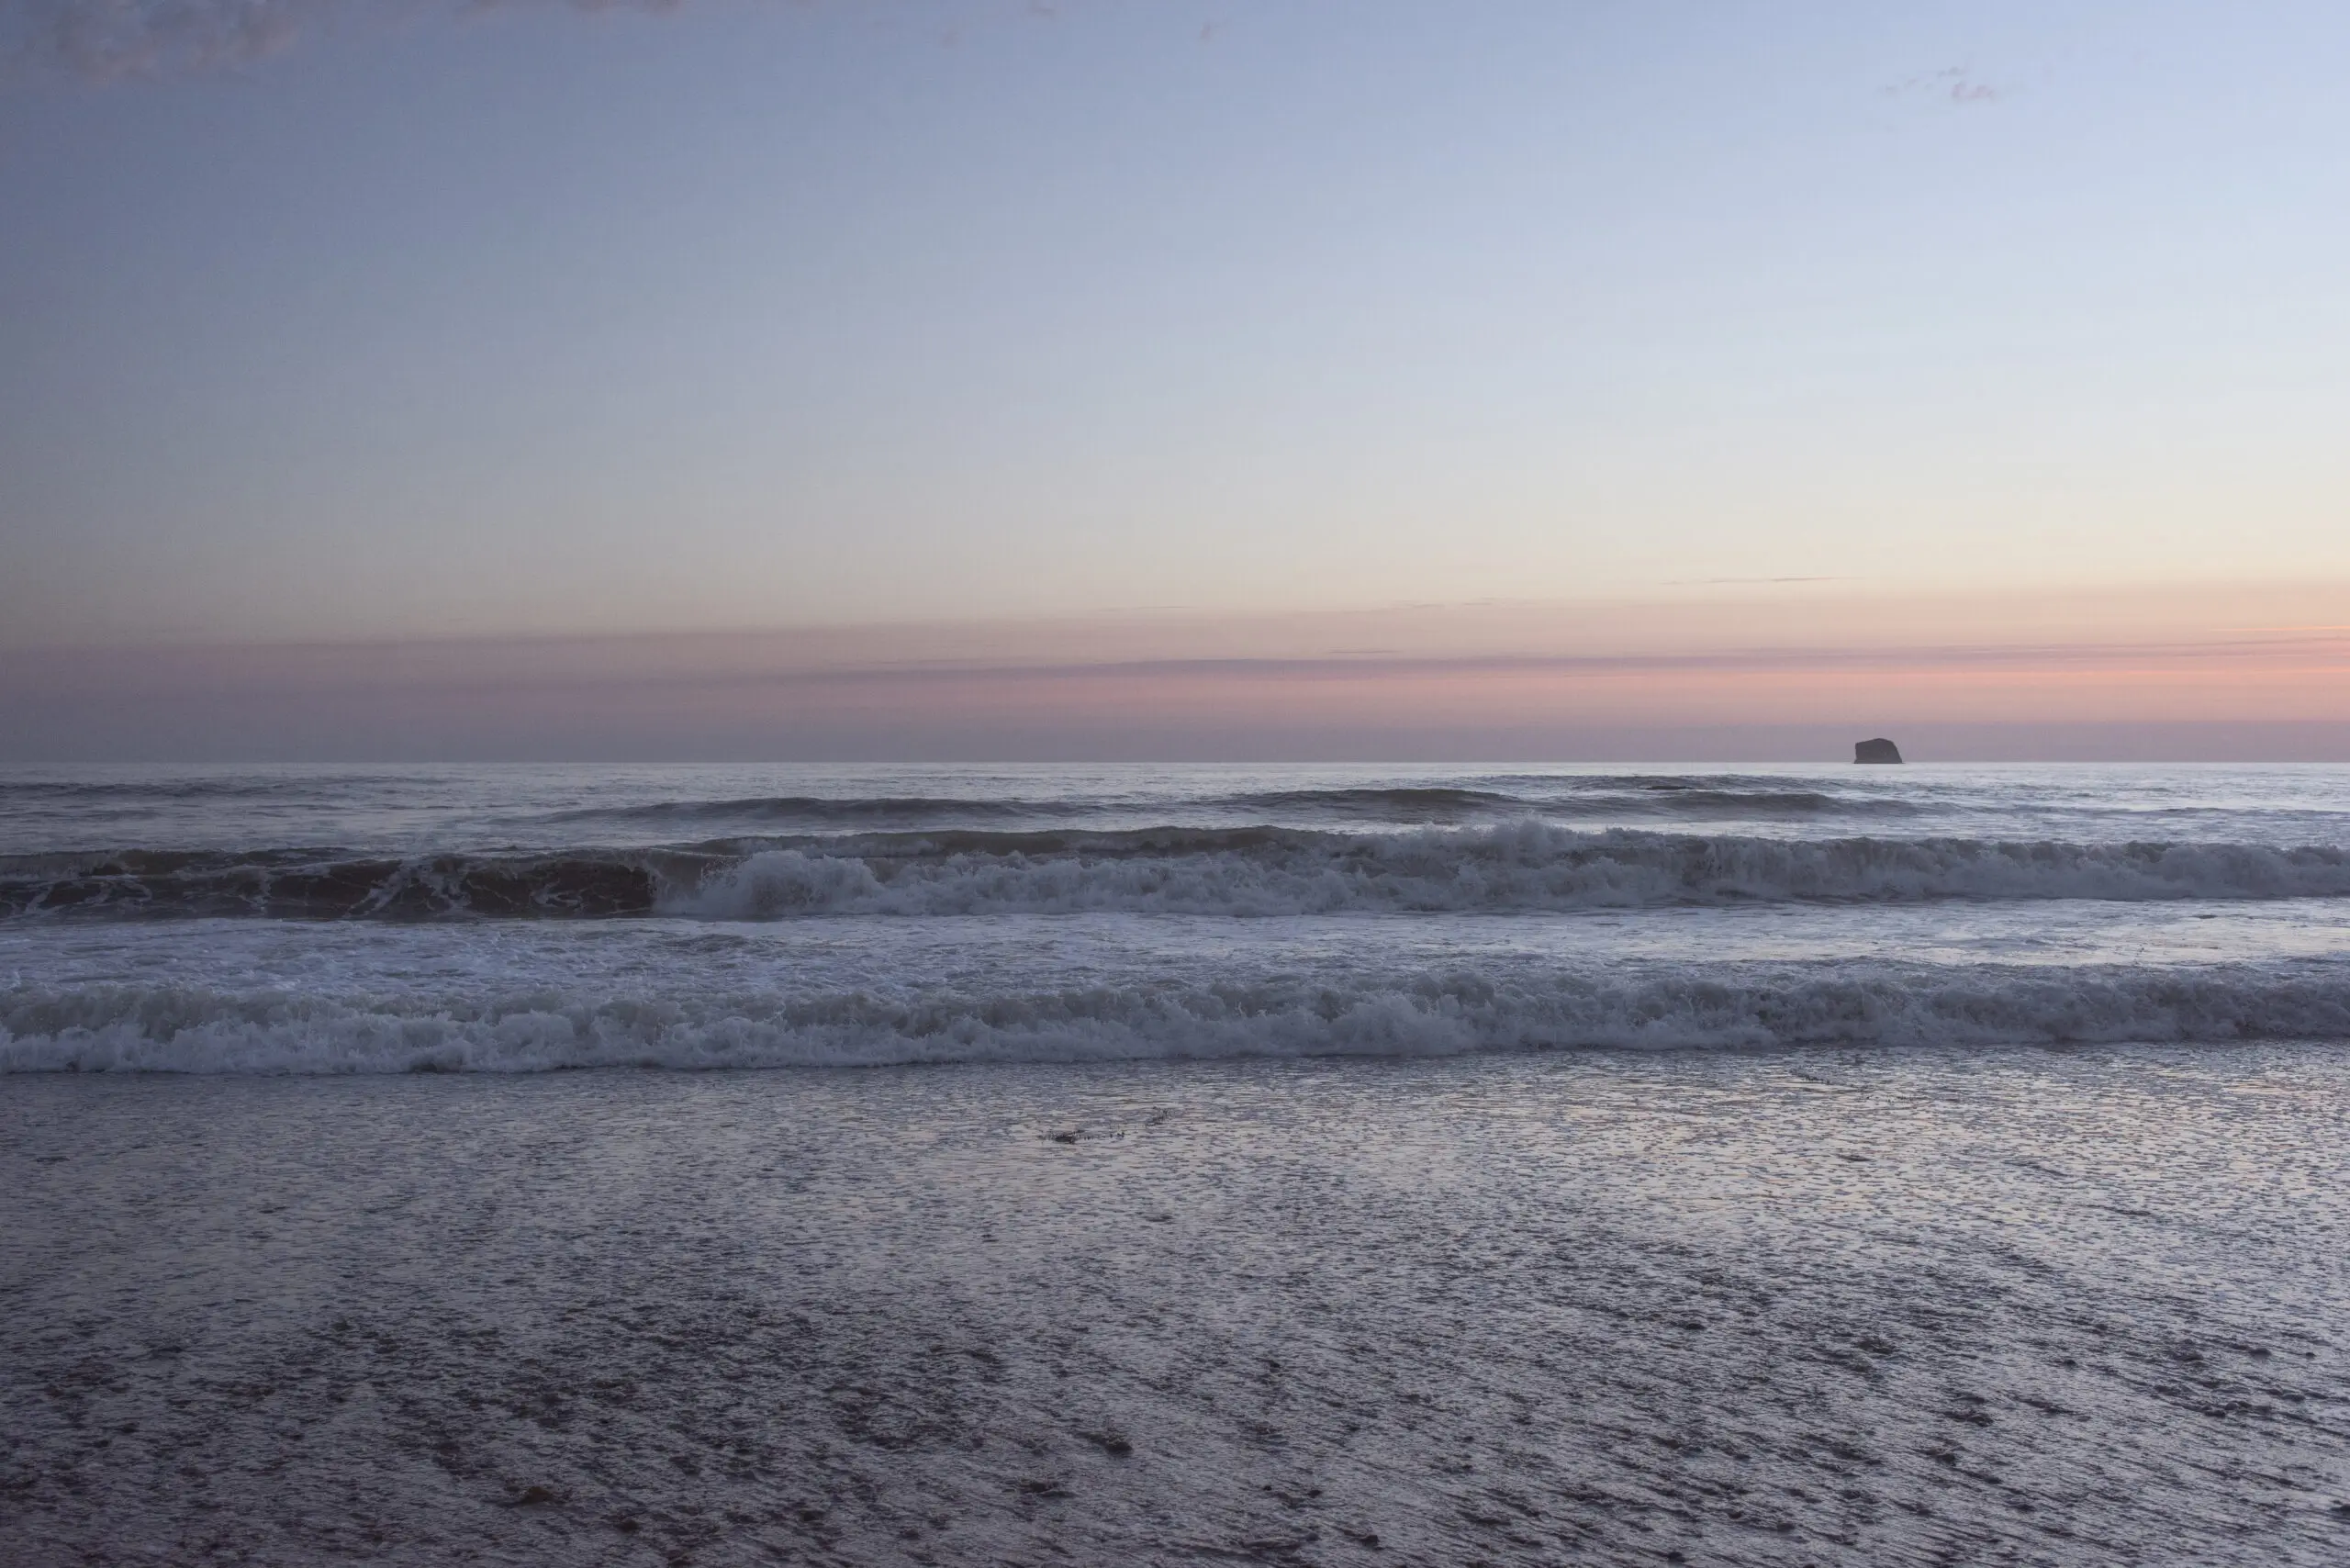 Wandbild (26299) Sunset Beach by Lynann Colligan präsentiert: 